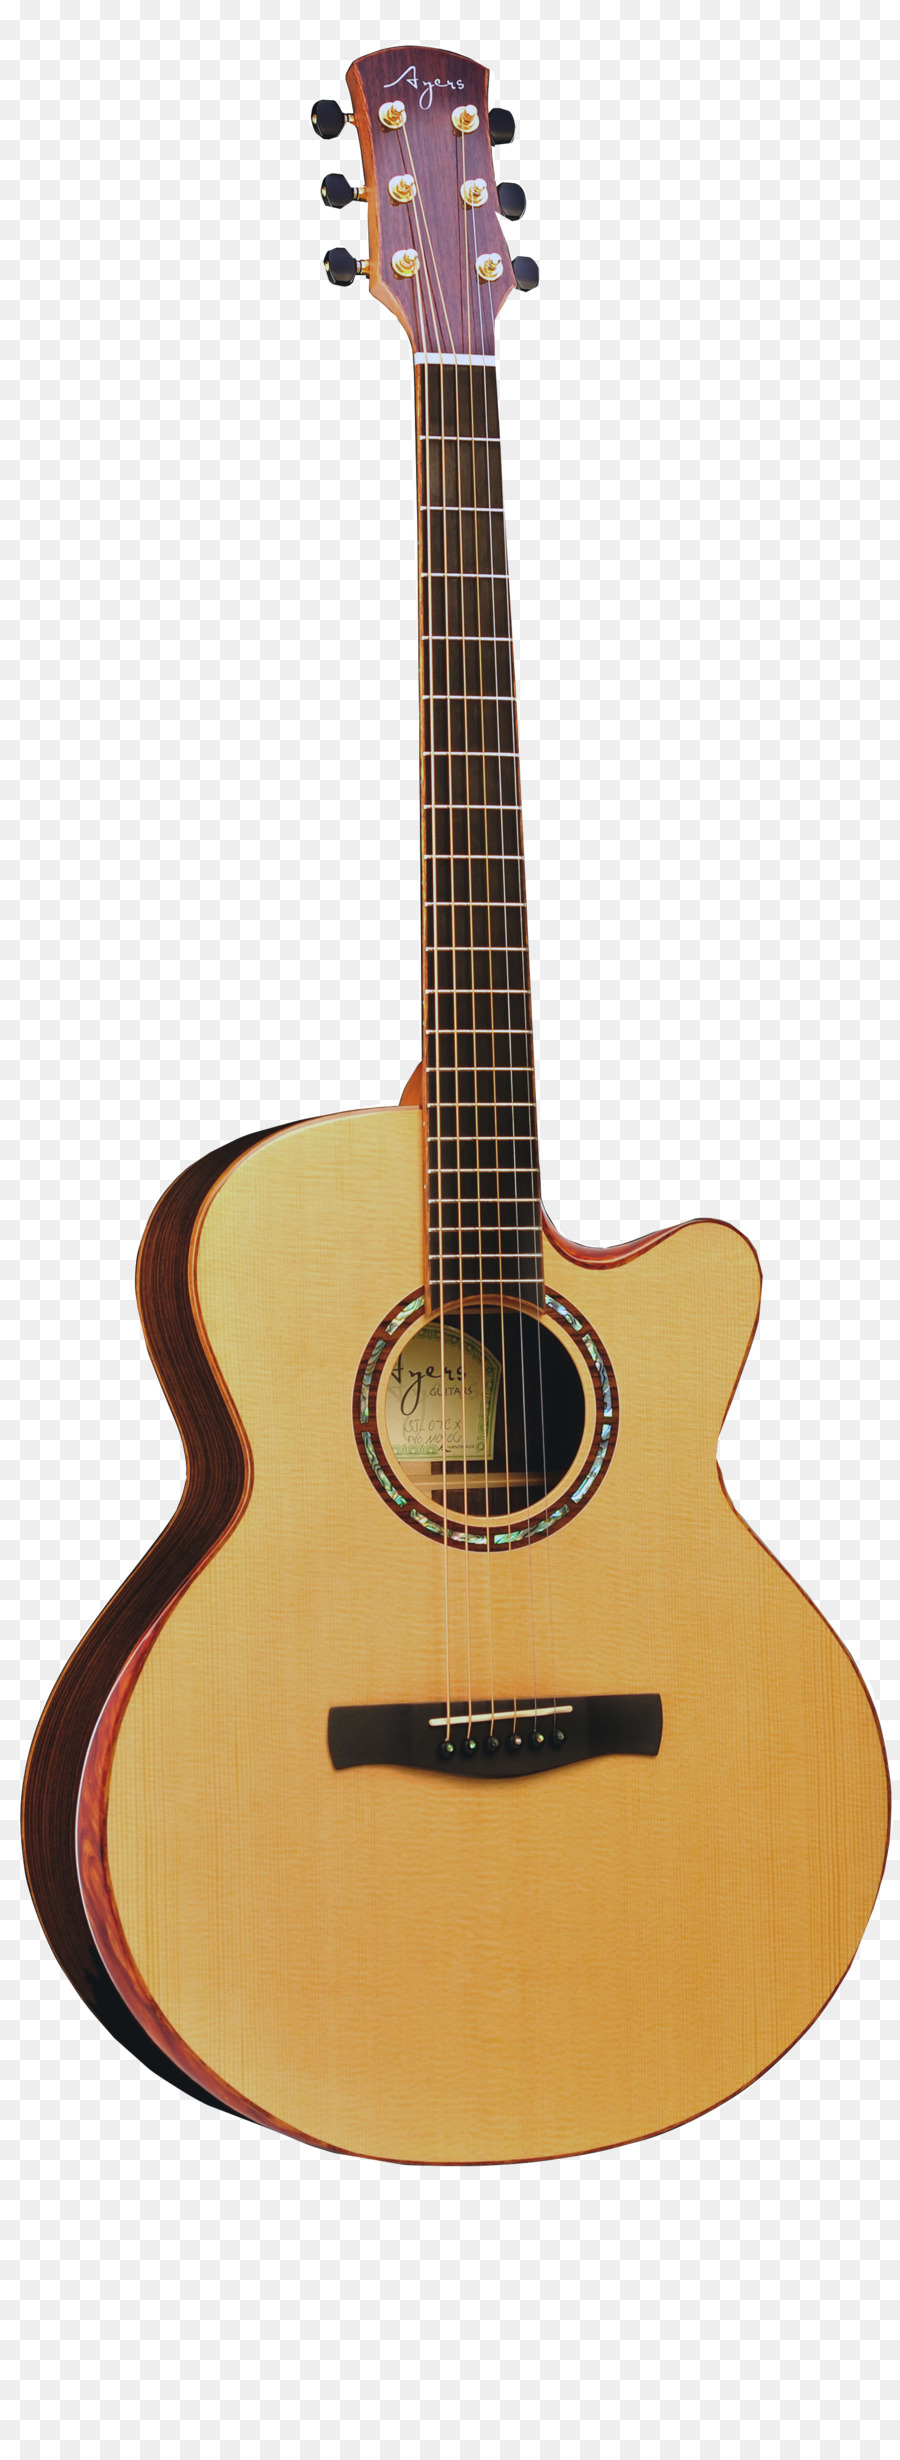 Âm thanh-guitar điện Fender dụng Cụ âm Nhạc công Ty Chế guitar - thủ công bản nhạc cụ